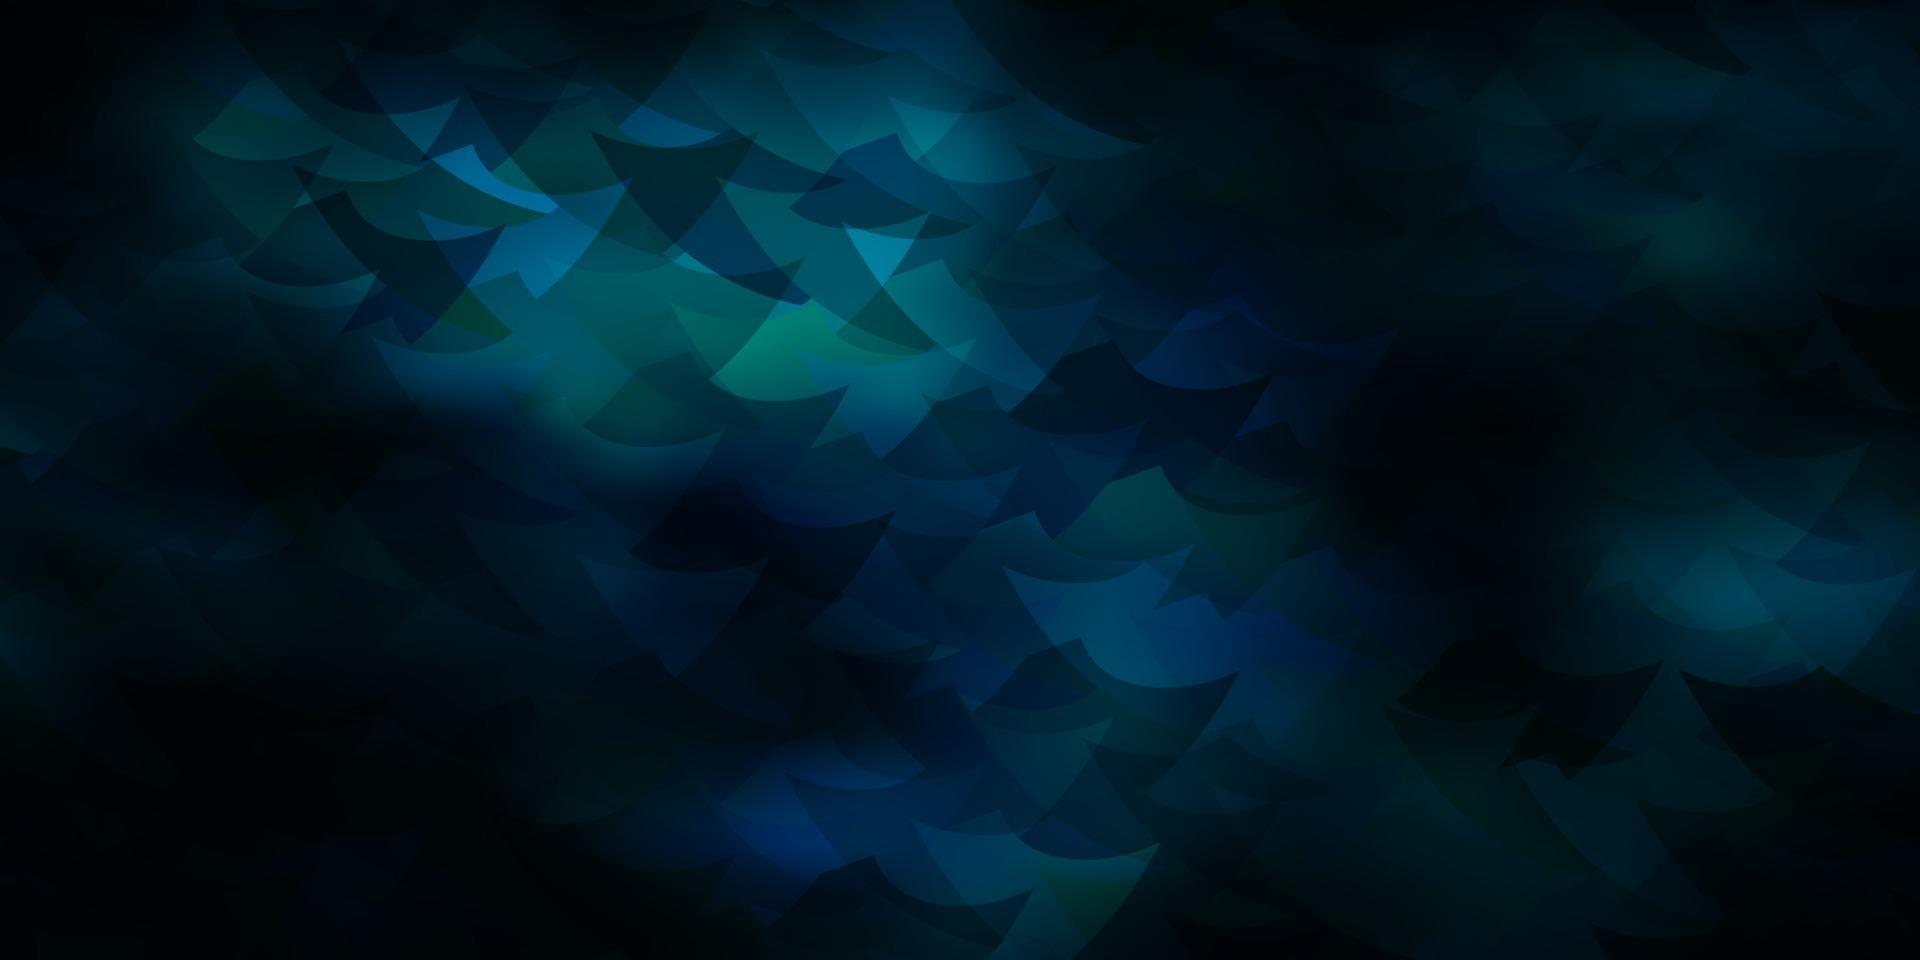 fond de vecteur bleu foncé avec des triangles, des cubes.